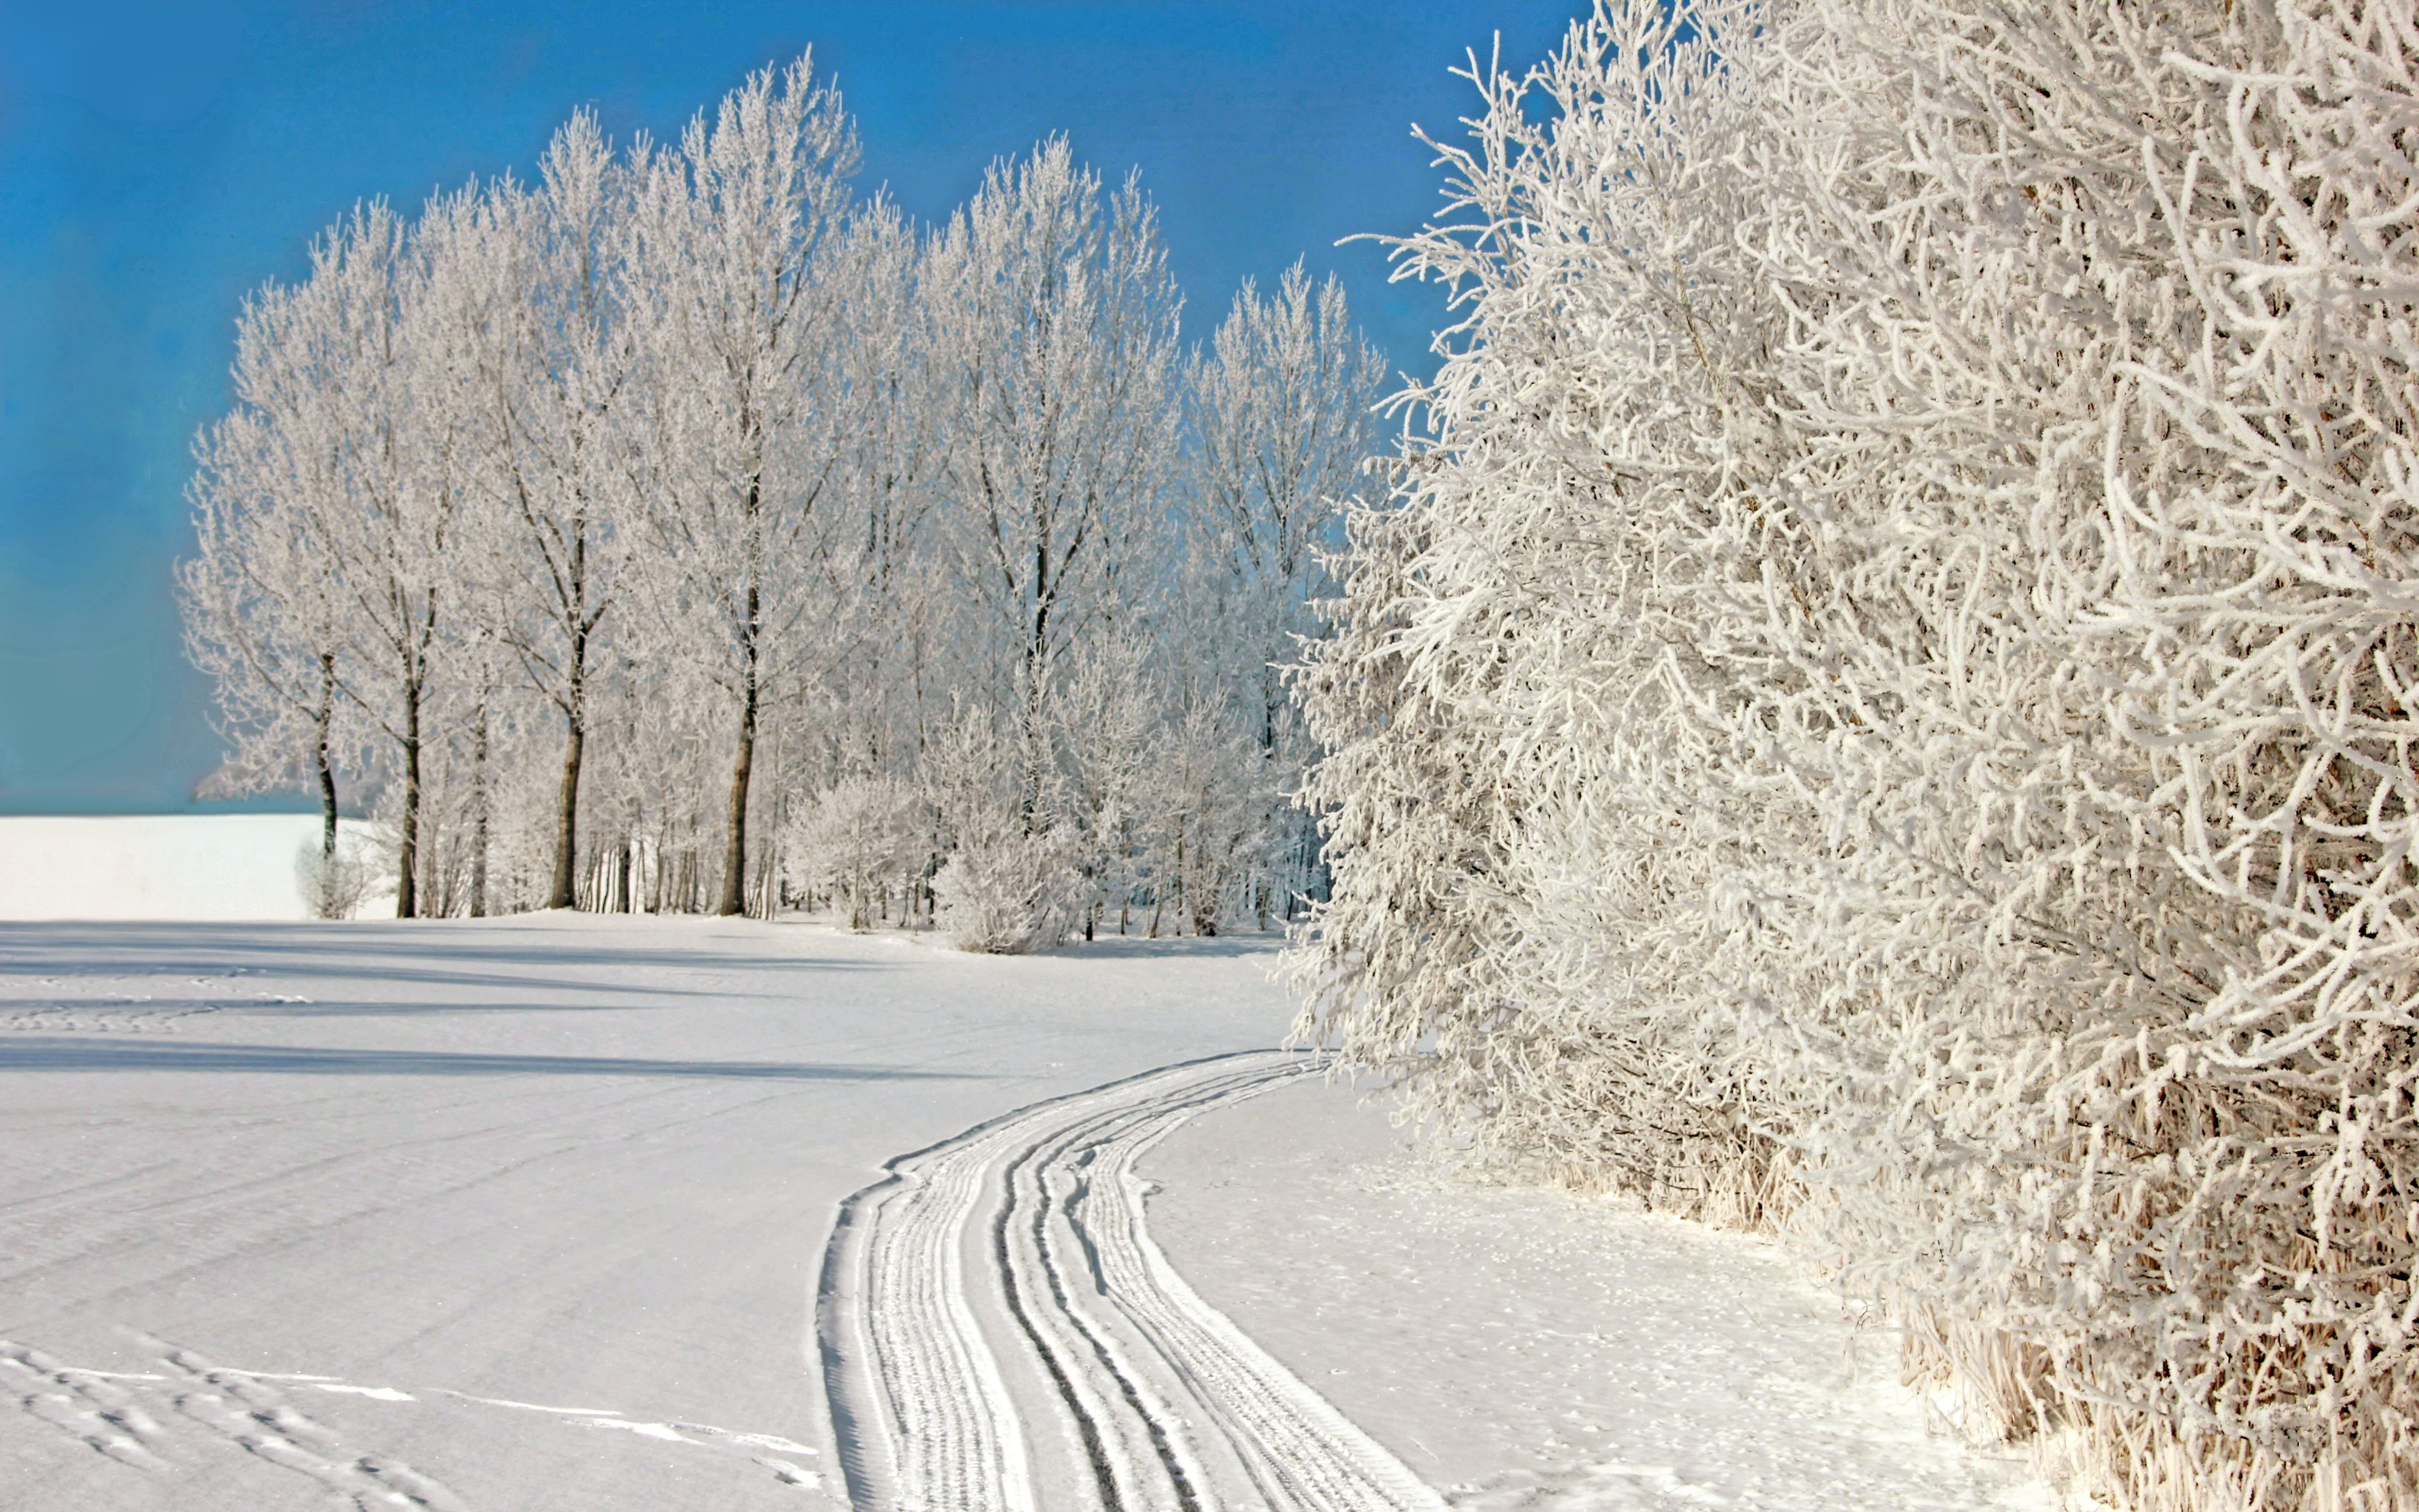 Скачать картинку Зима, Снег, Дерево, Белый, Земля/природа в телефон бесплатно.